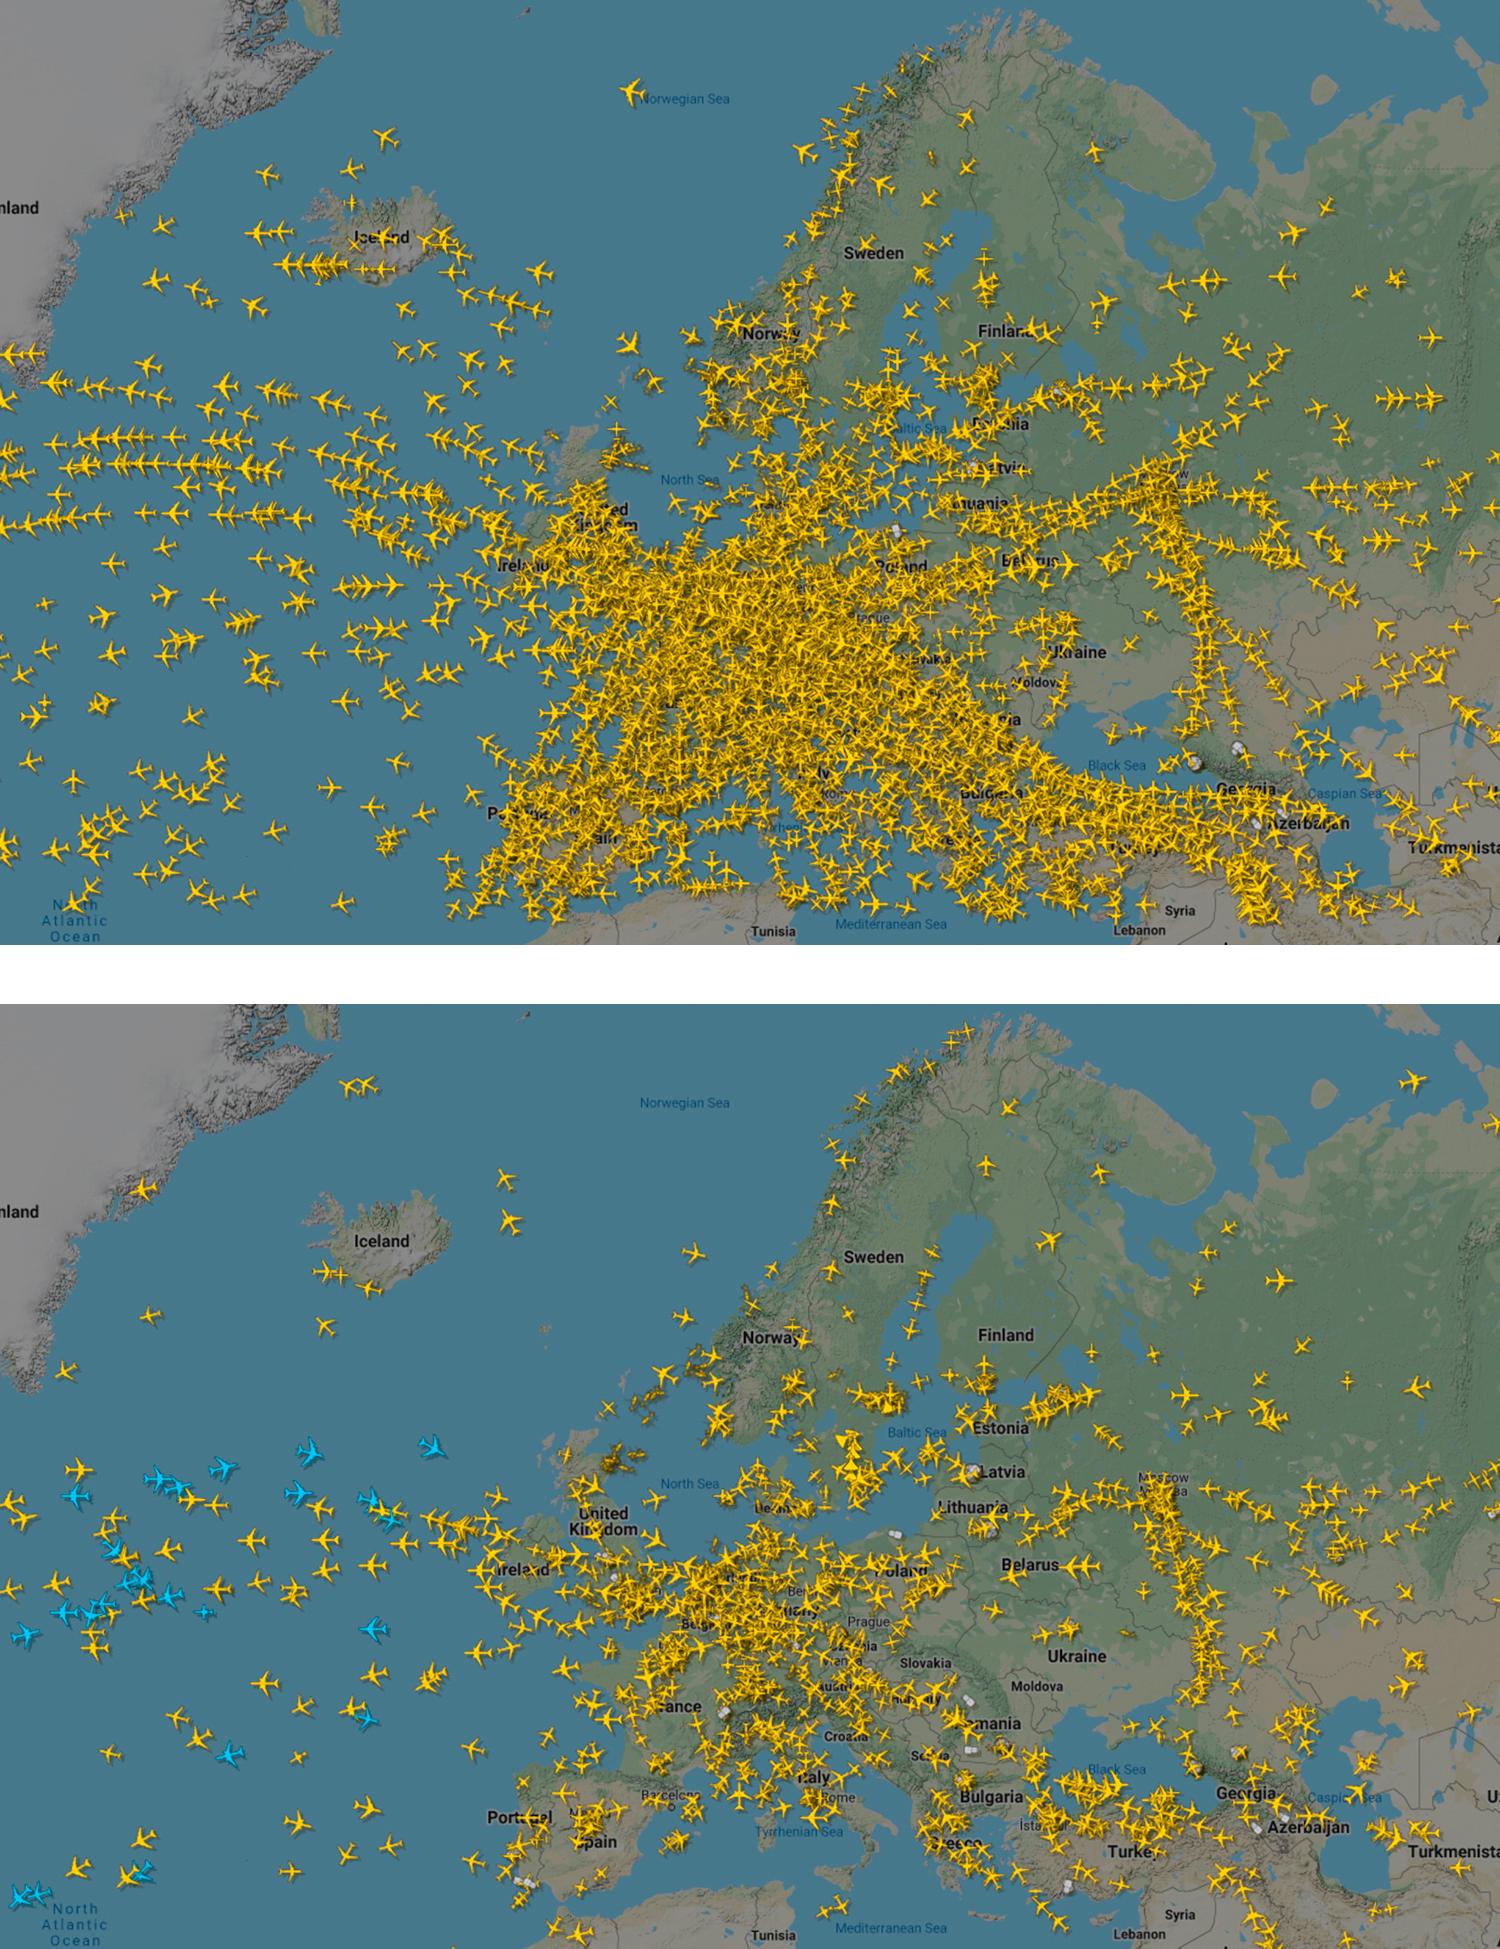 Flygtrafik över Europa. Den övre bilden är från den 18 december i fjol, den nedre från den 25 mars i år.